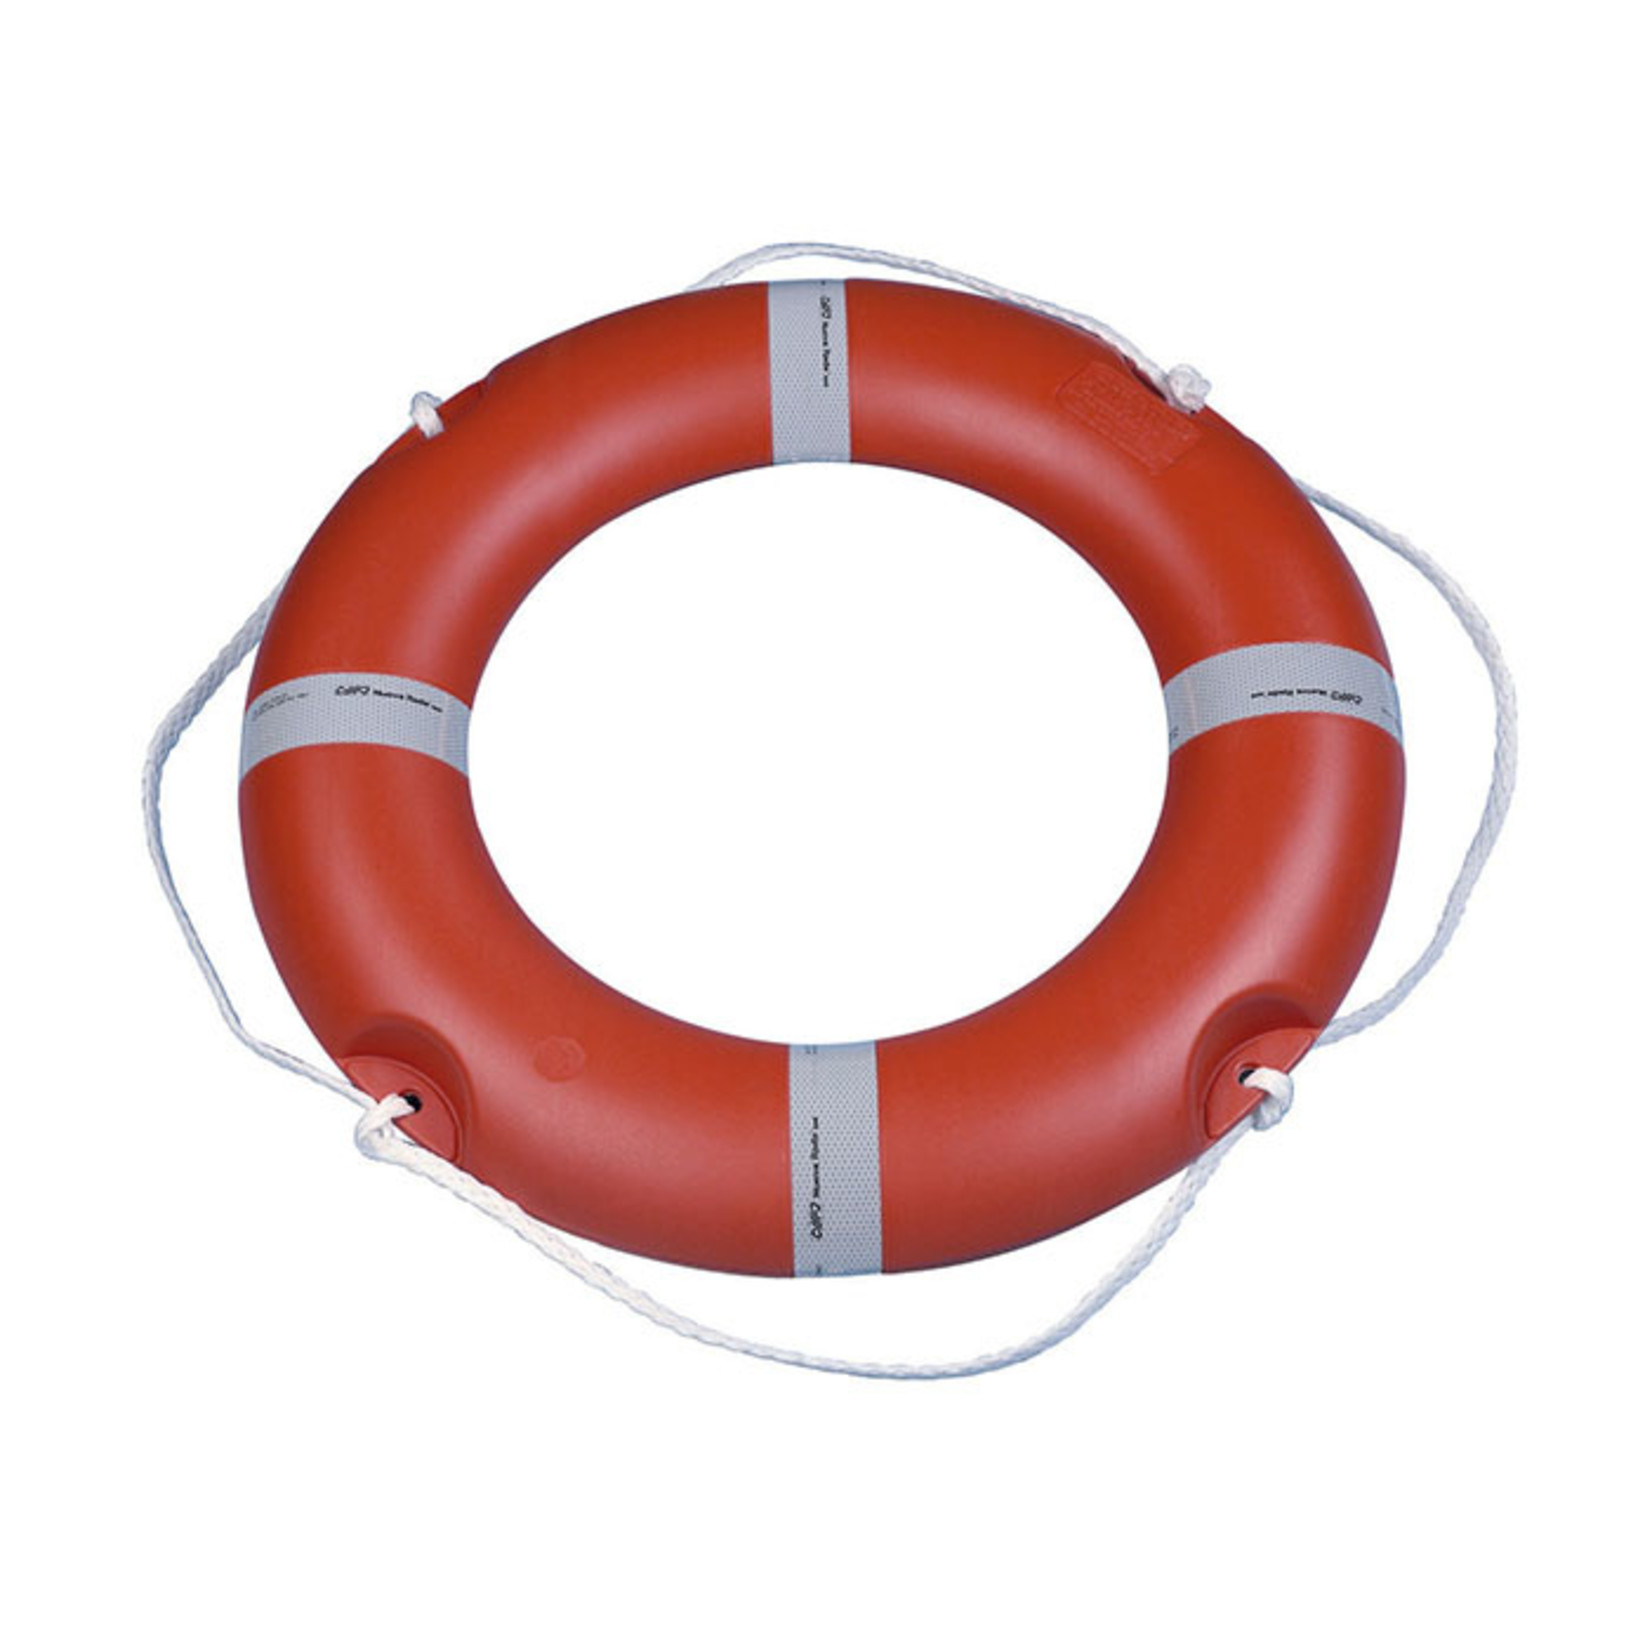 Plastimo Ring lifebuoy solas dia  73cm 4.6 kg